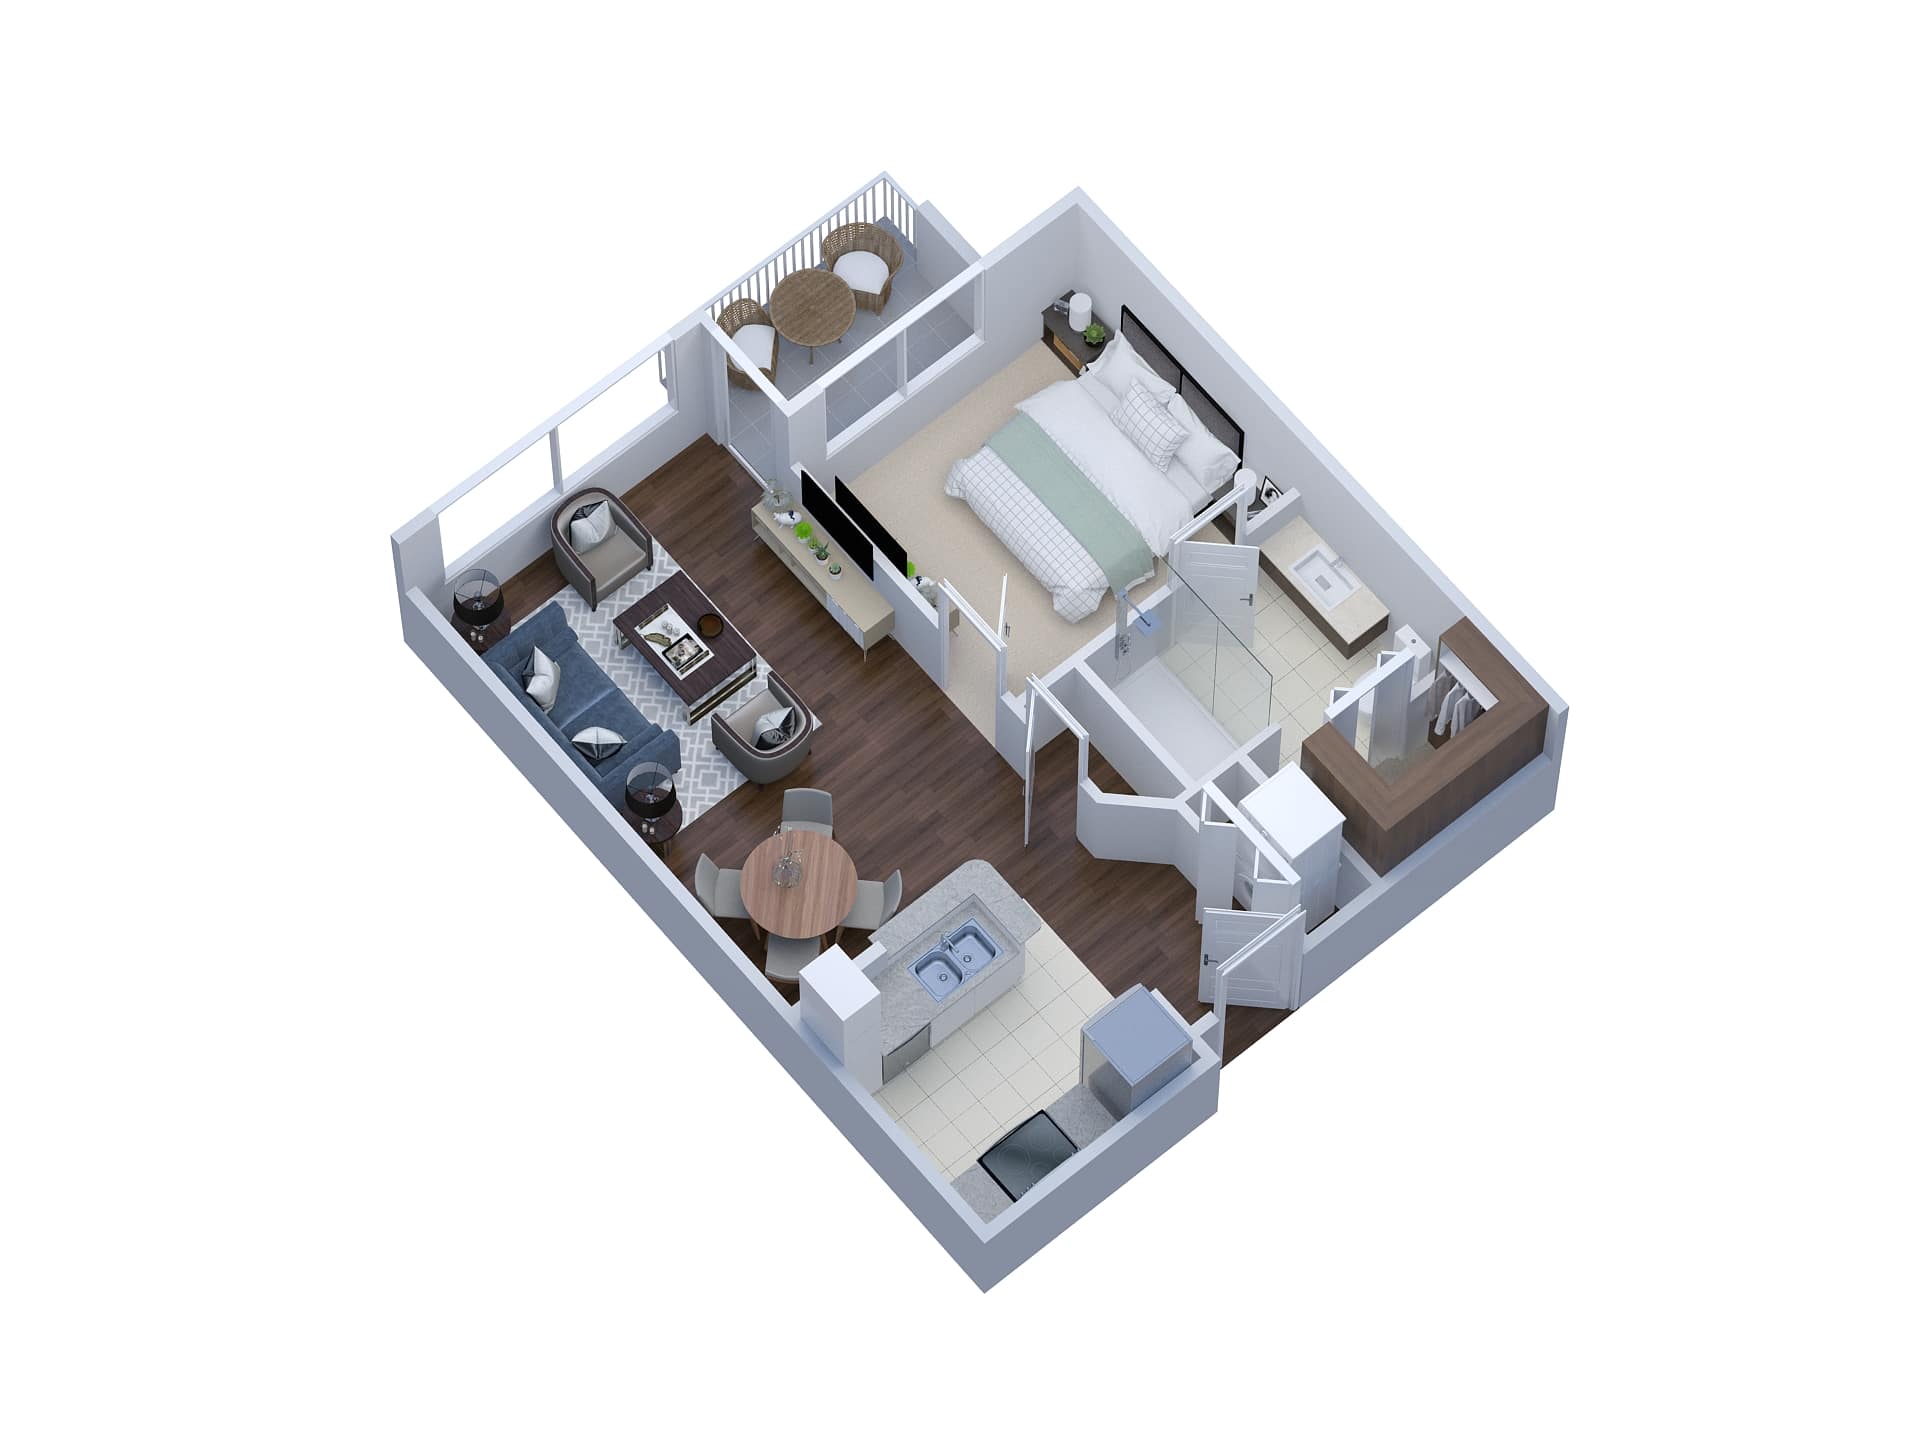 Almera - senior living floor plan